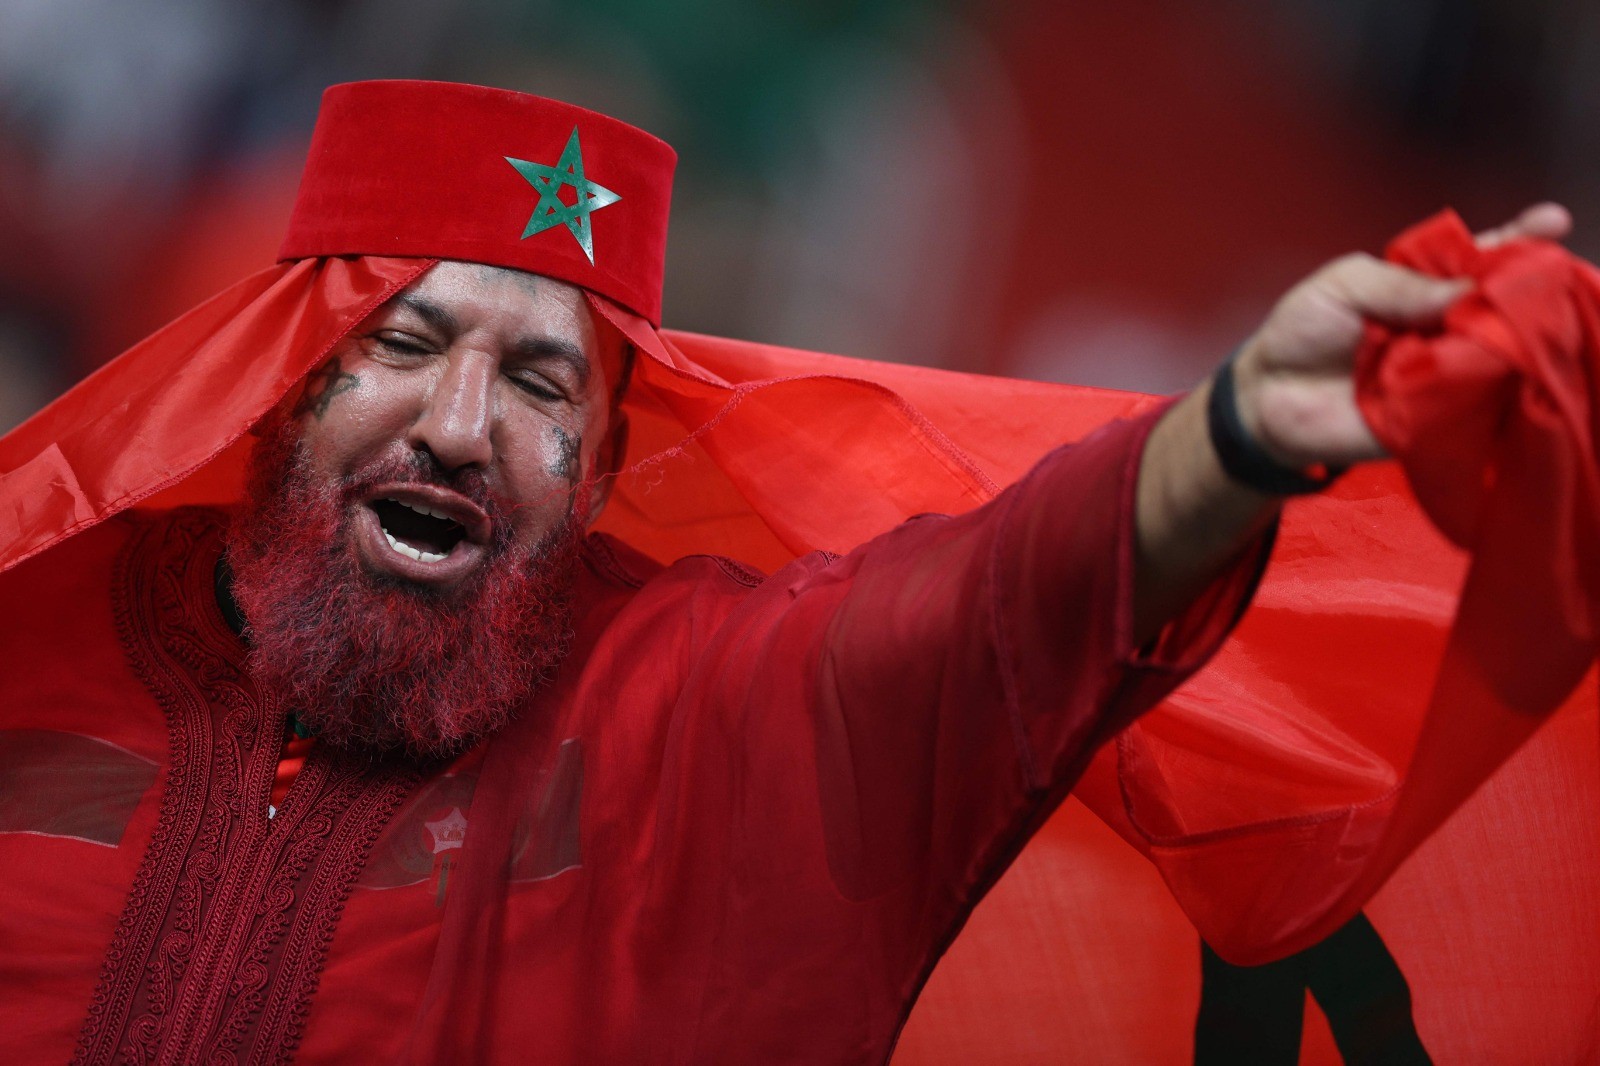 المغاربة يحتشدون في ملعب المباراة لتشجيع منتحبهم .. تصوير (الفرنسية) 14.jpg